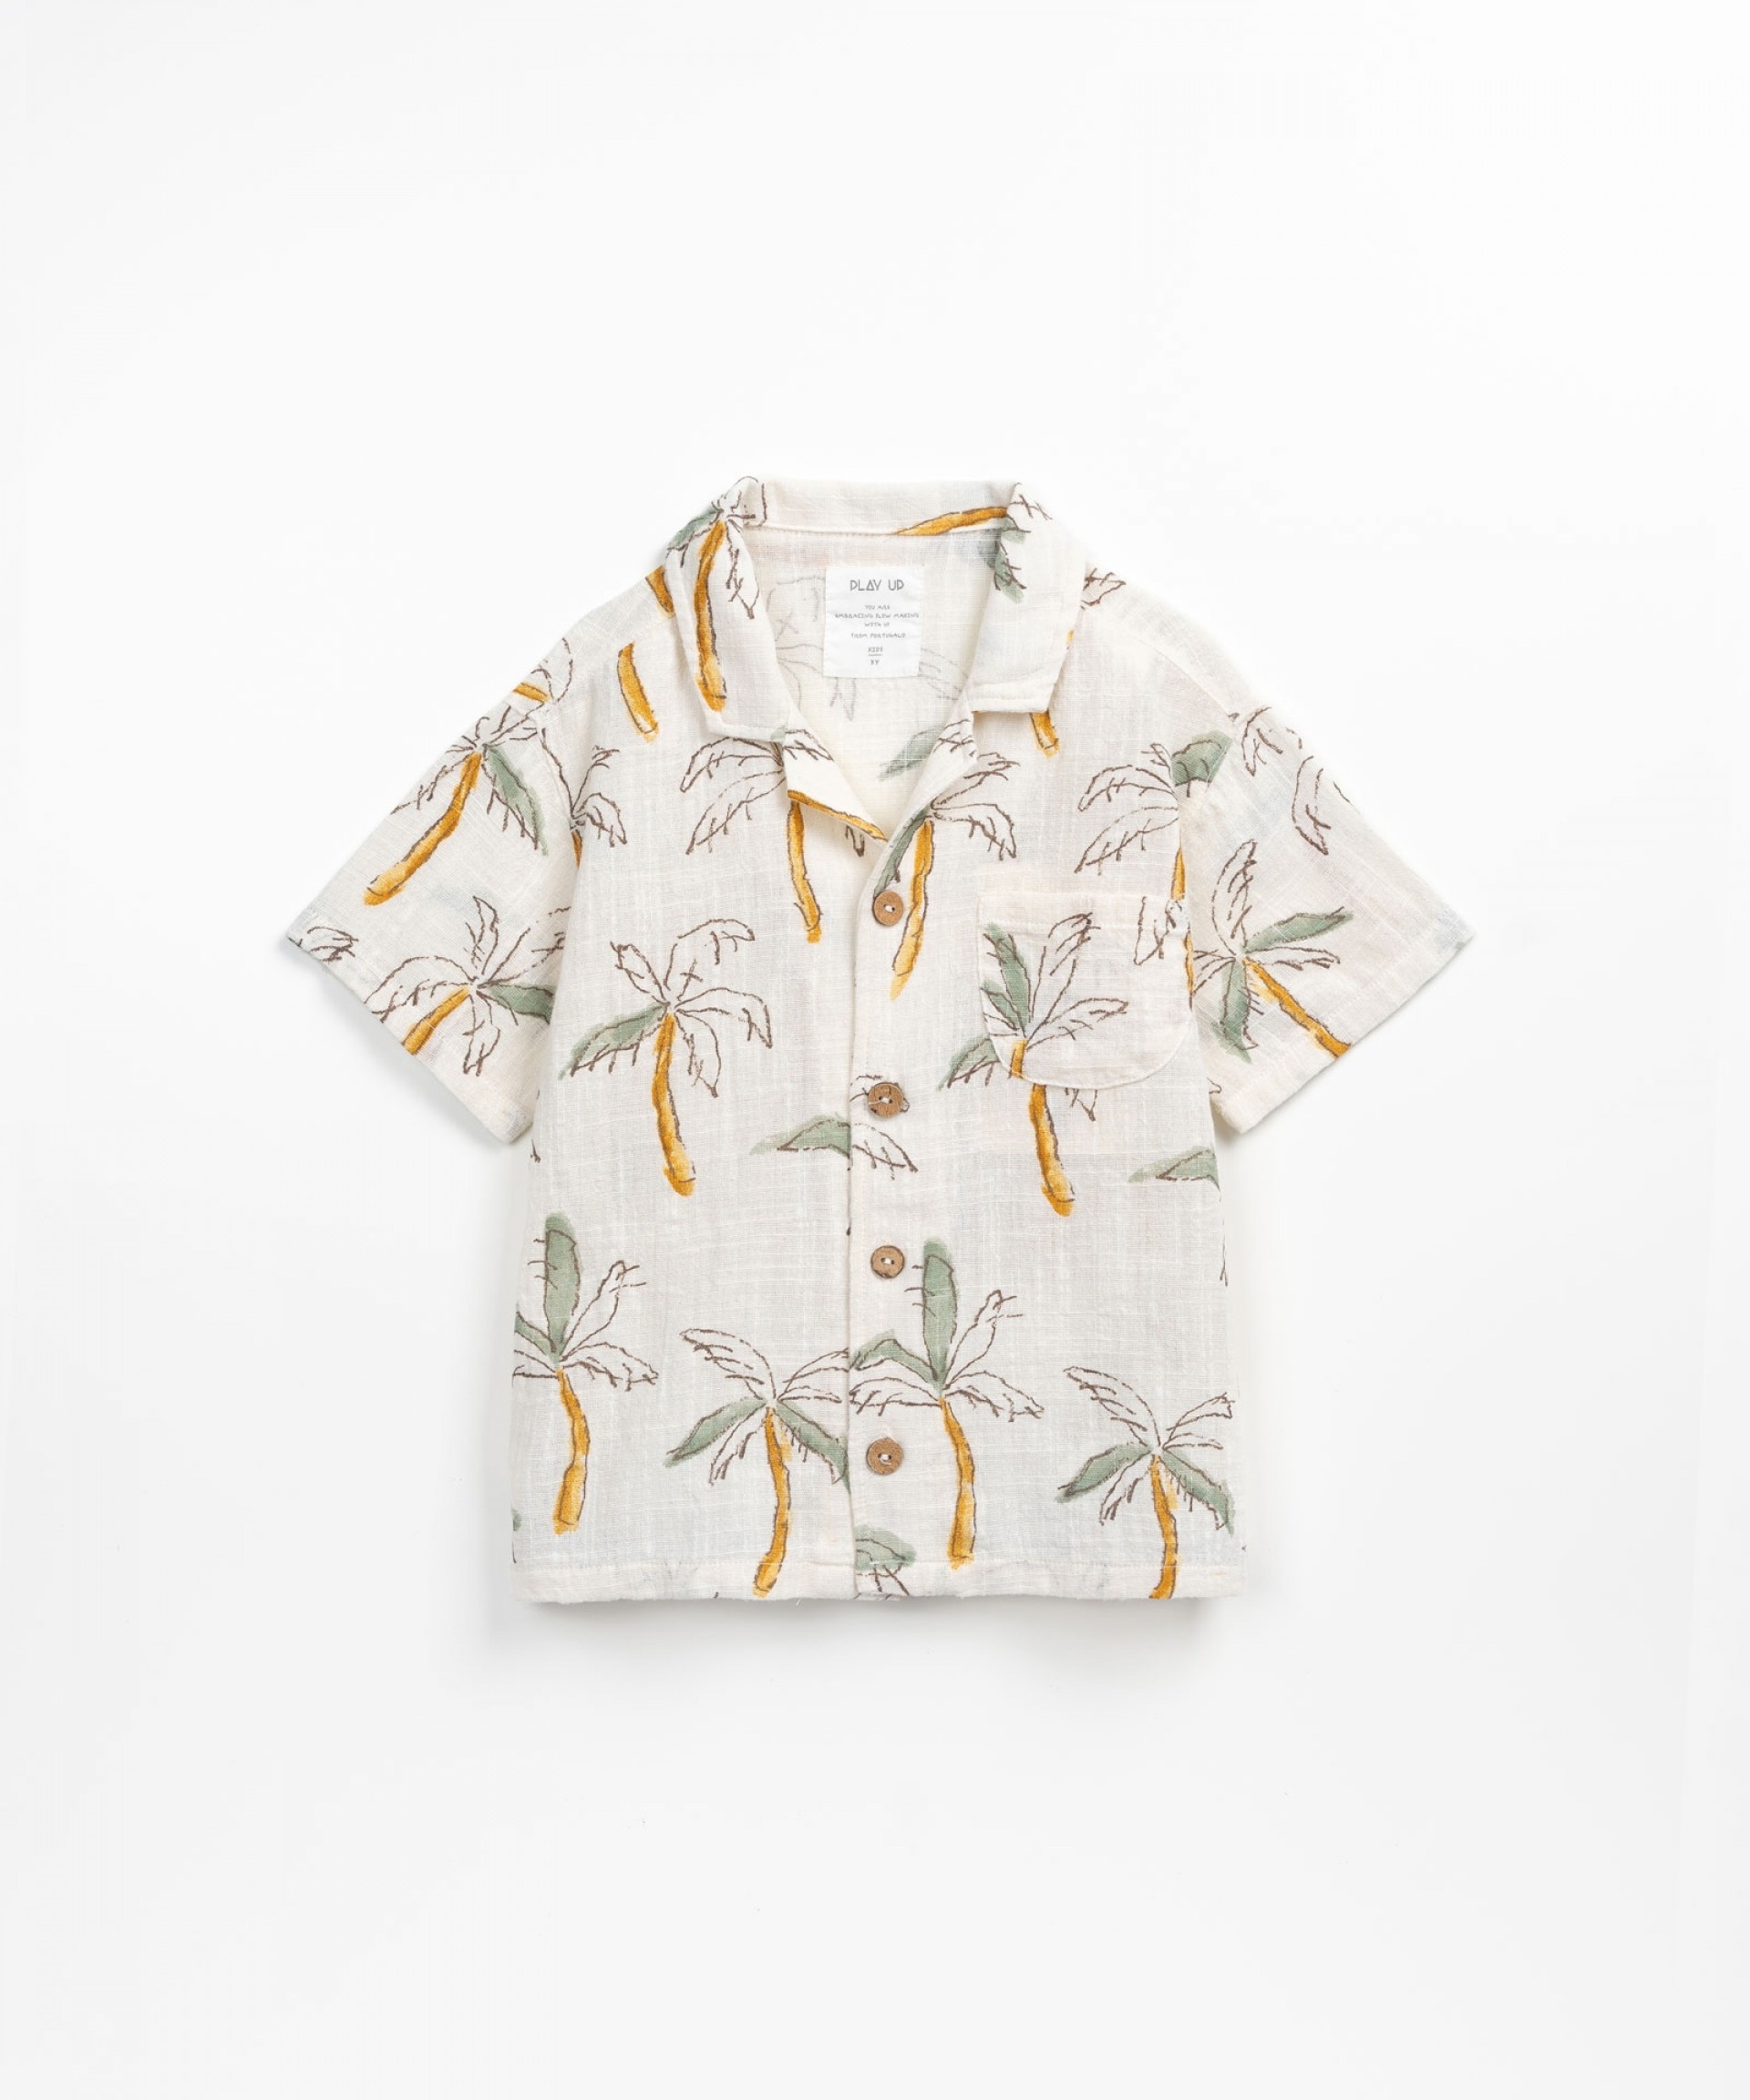 Camisa com estampado de palmeiras | Textile Art